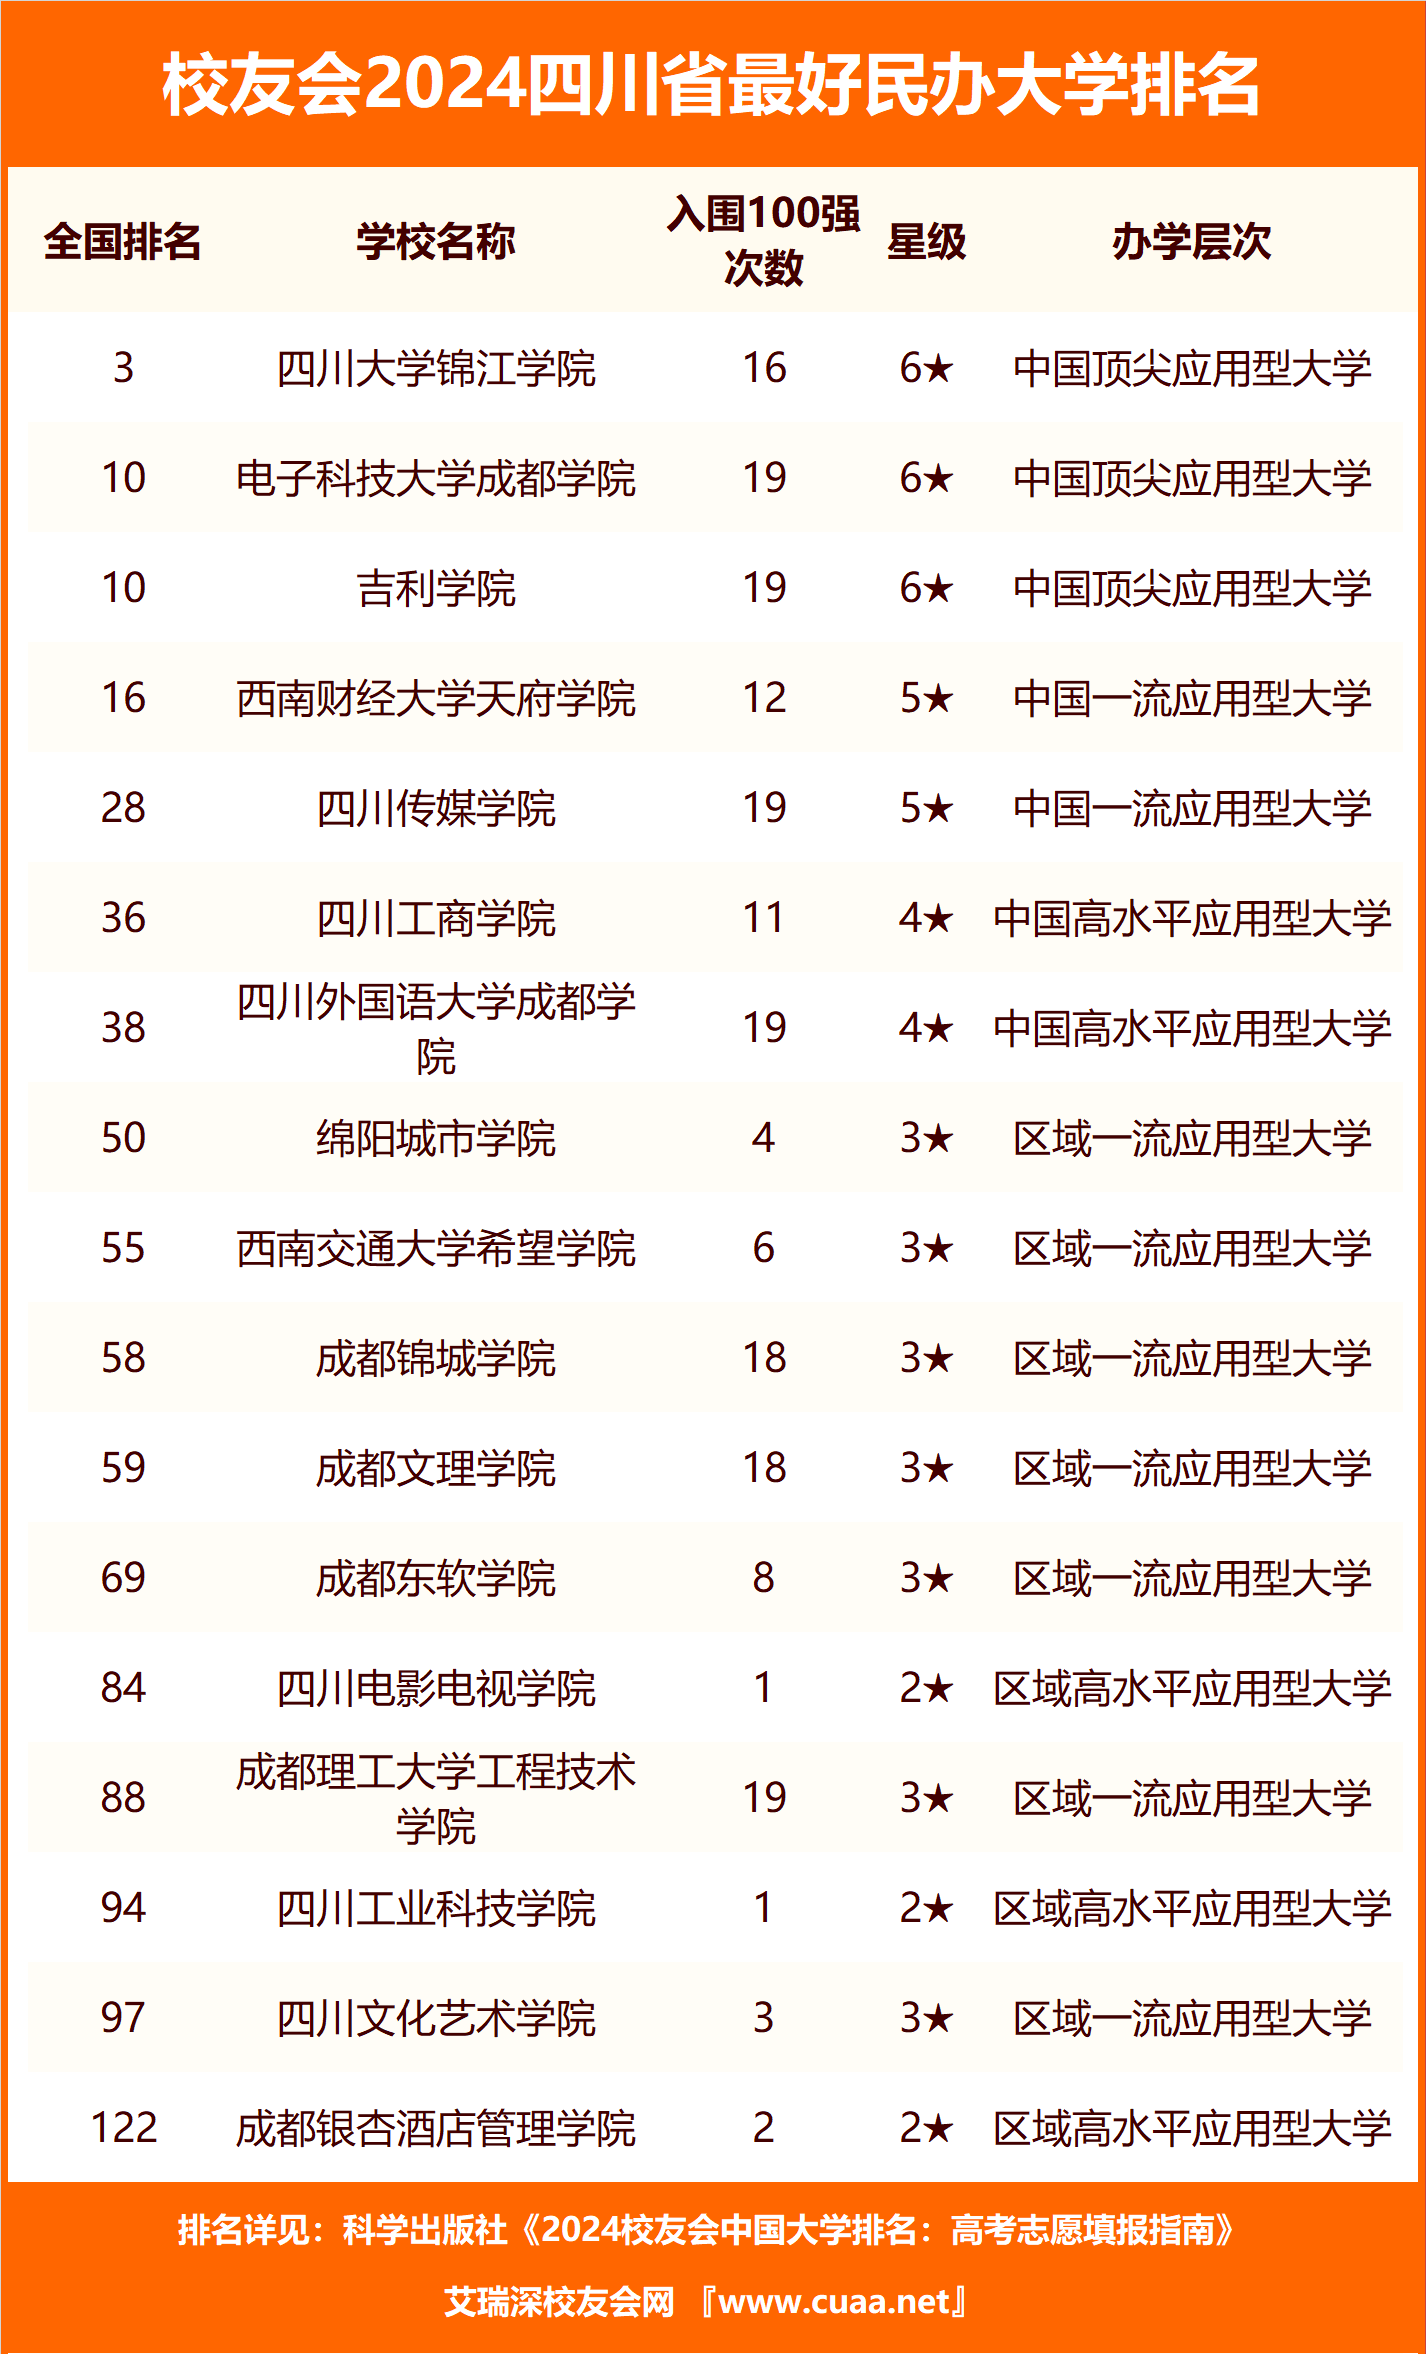 排名上榜的四川省高职院校中,四川工程职业技术学院最具综合竞争力